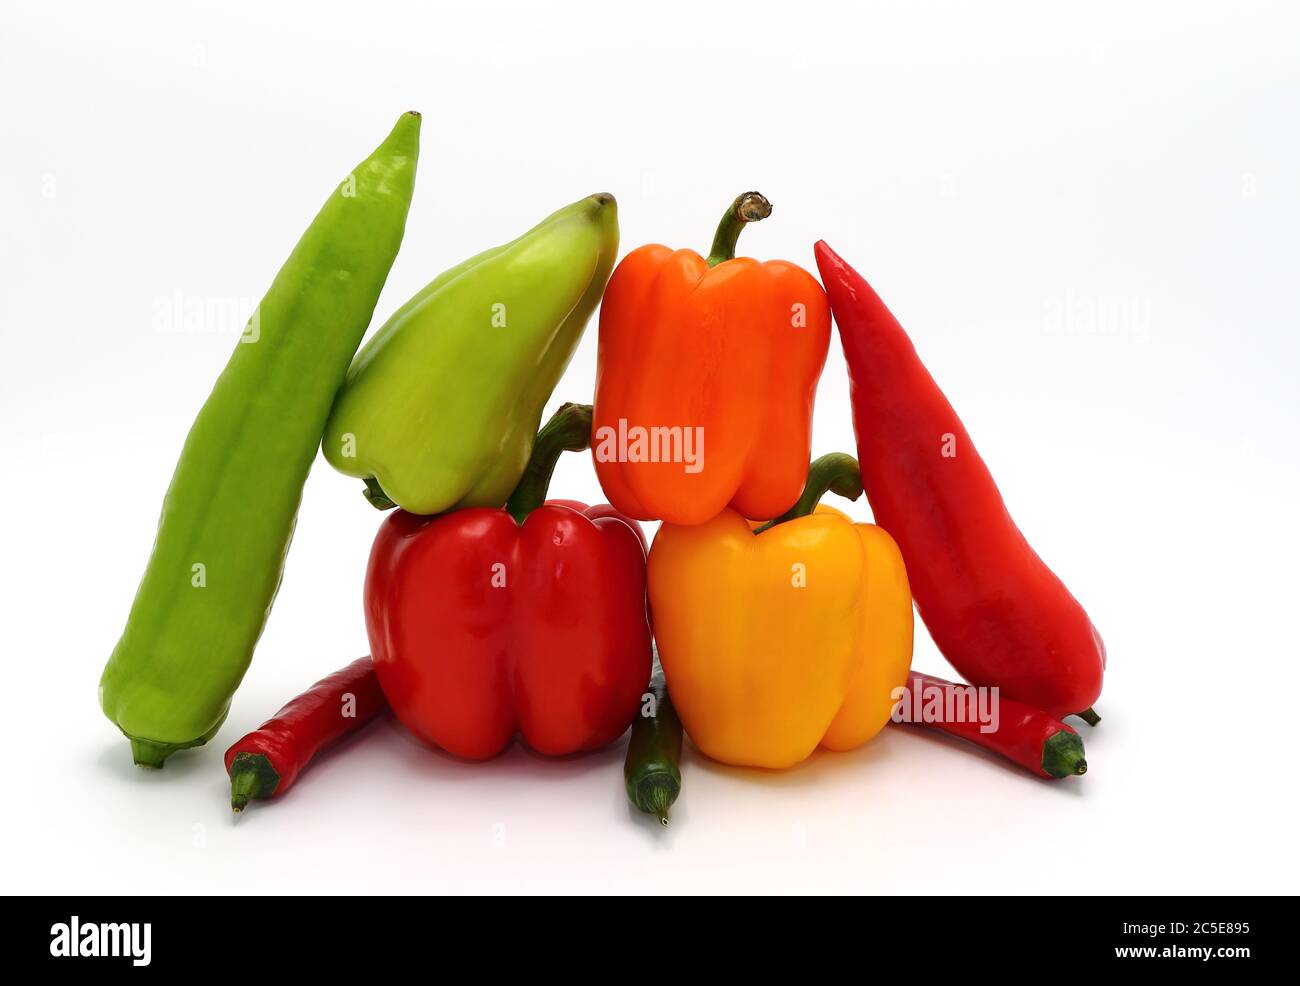 Komposition von verschiedenen Arten von Paprika in verschiedenen Formen, Farben und Größen auf einem hellen Hintergrund. Naturprodukt. Natürliche Farbe. Nahaufnahme. Stockfoto